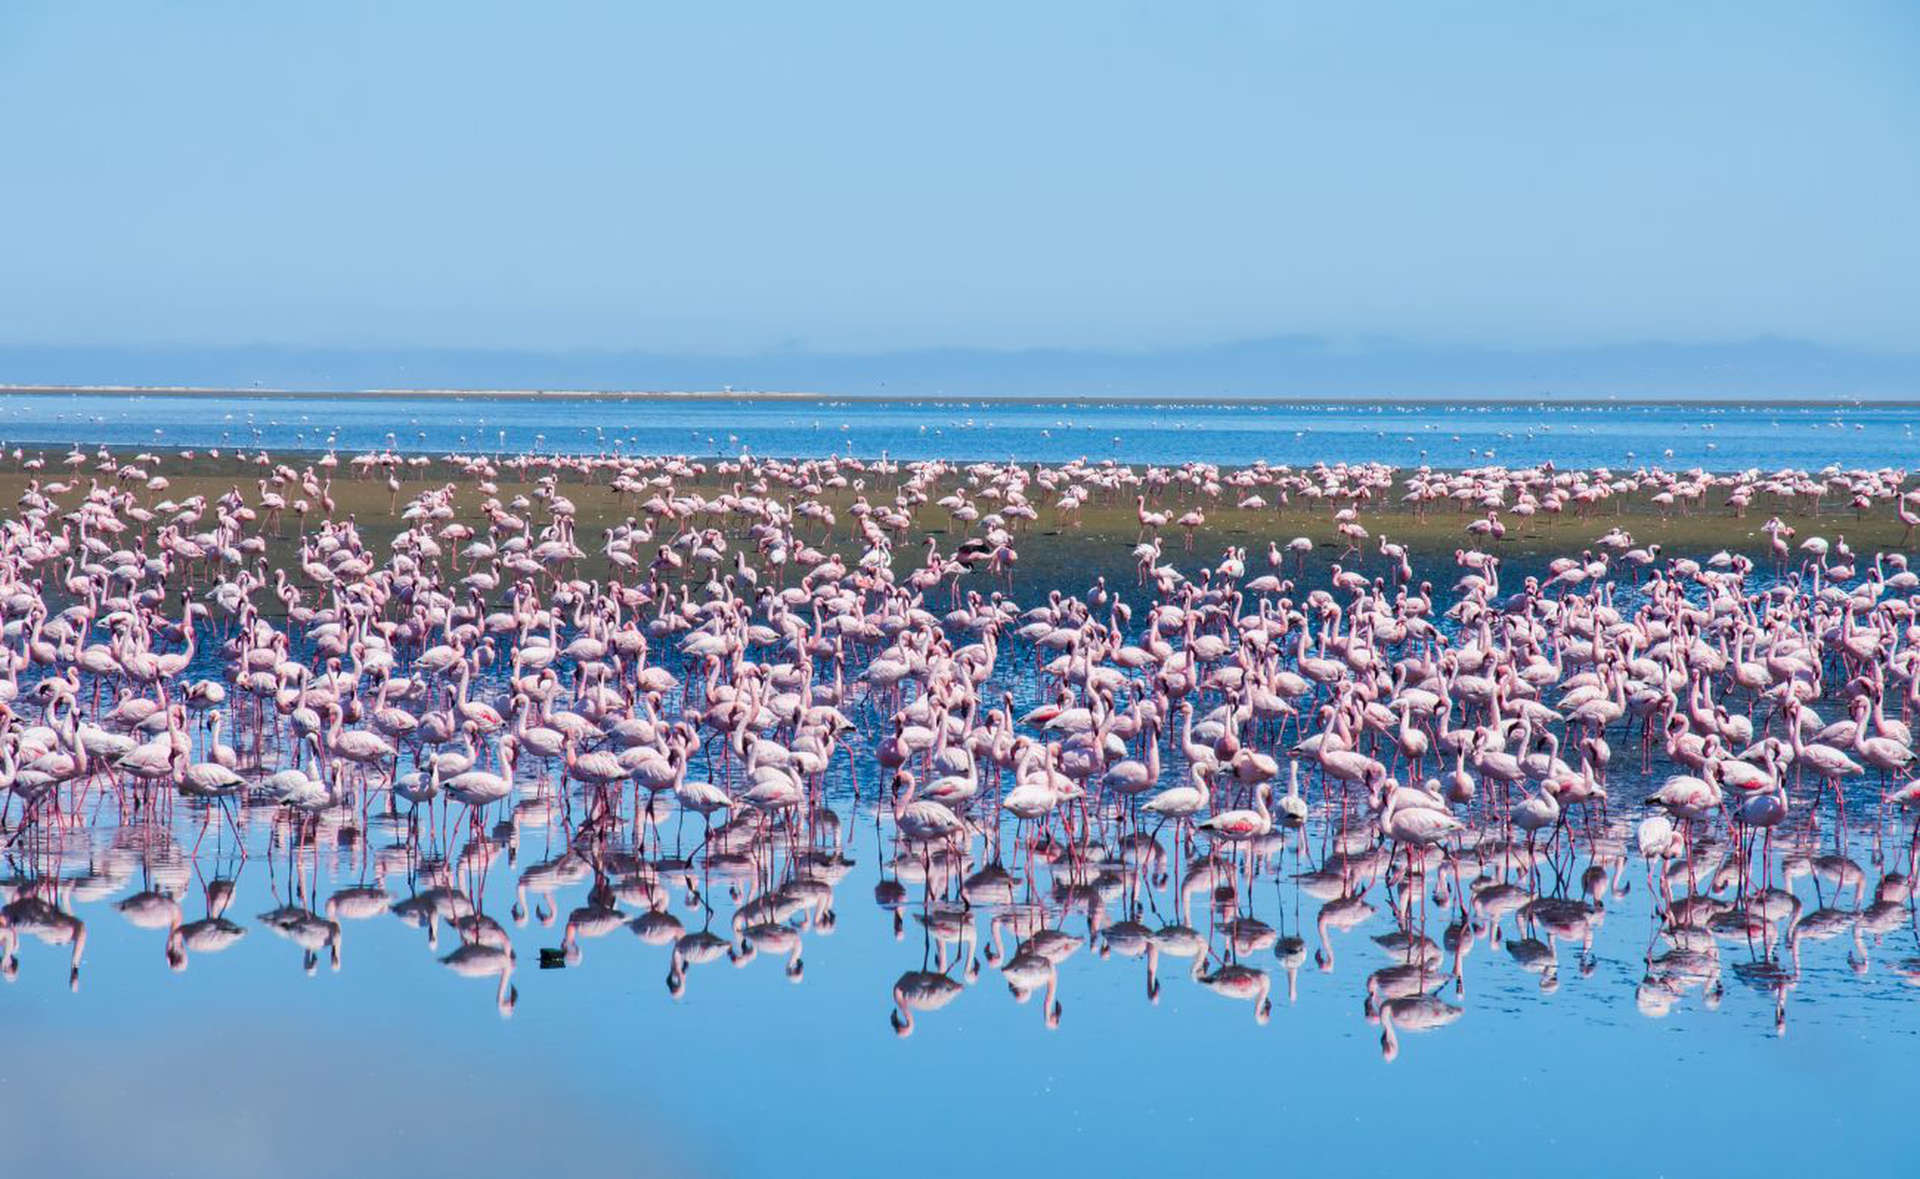 Los flamencos rosados son una característica de Namibia en marzo